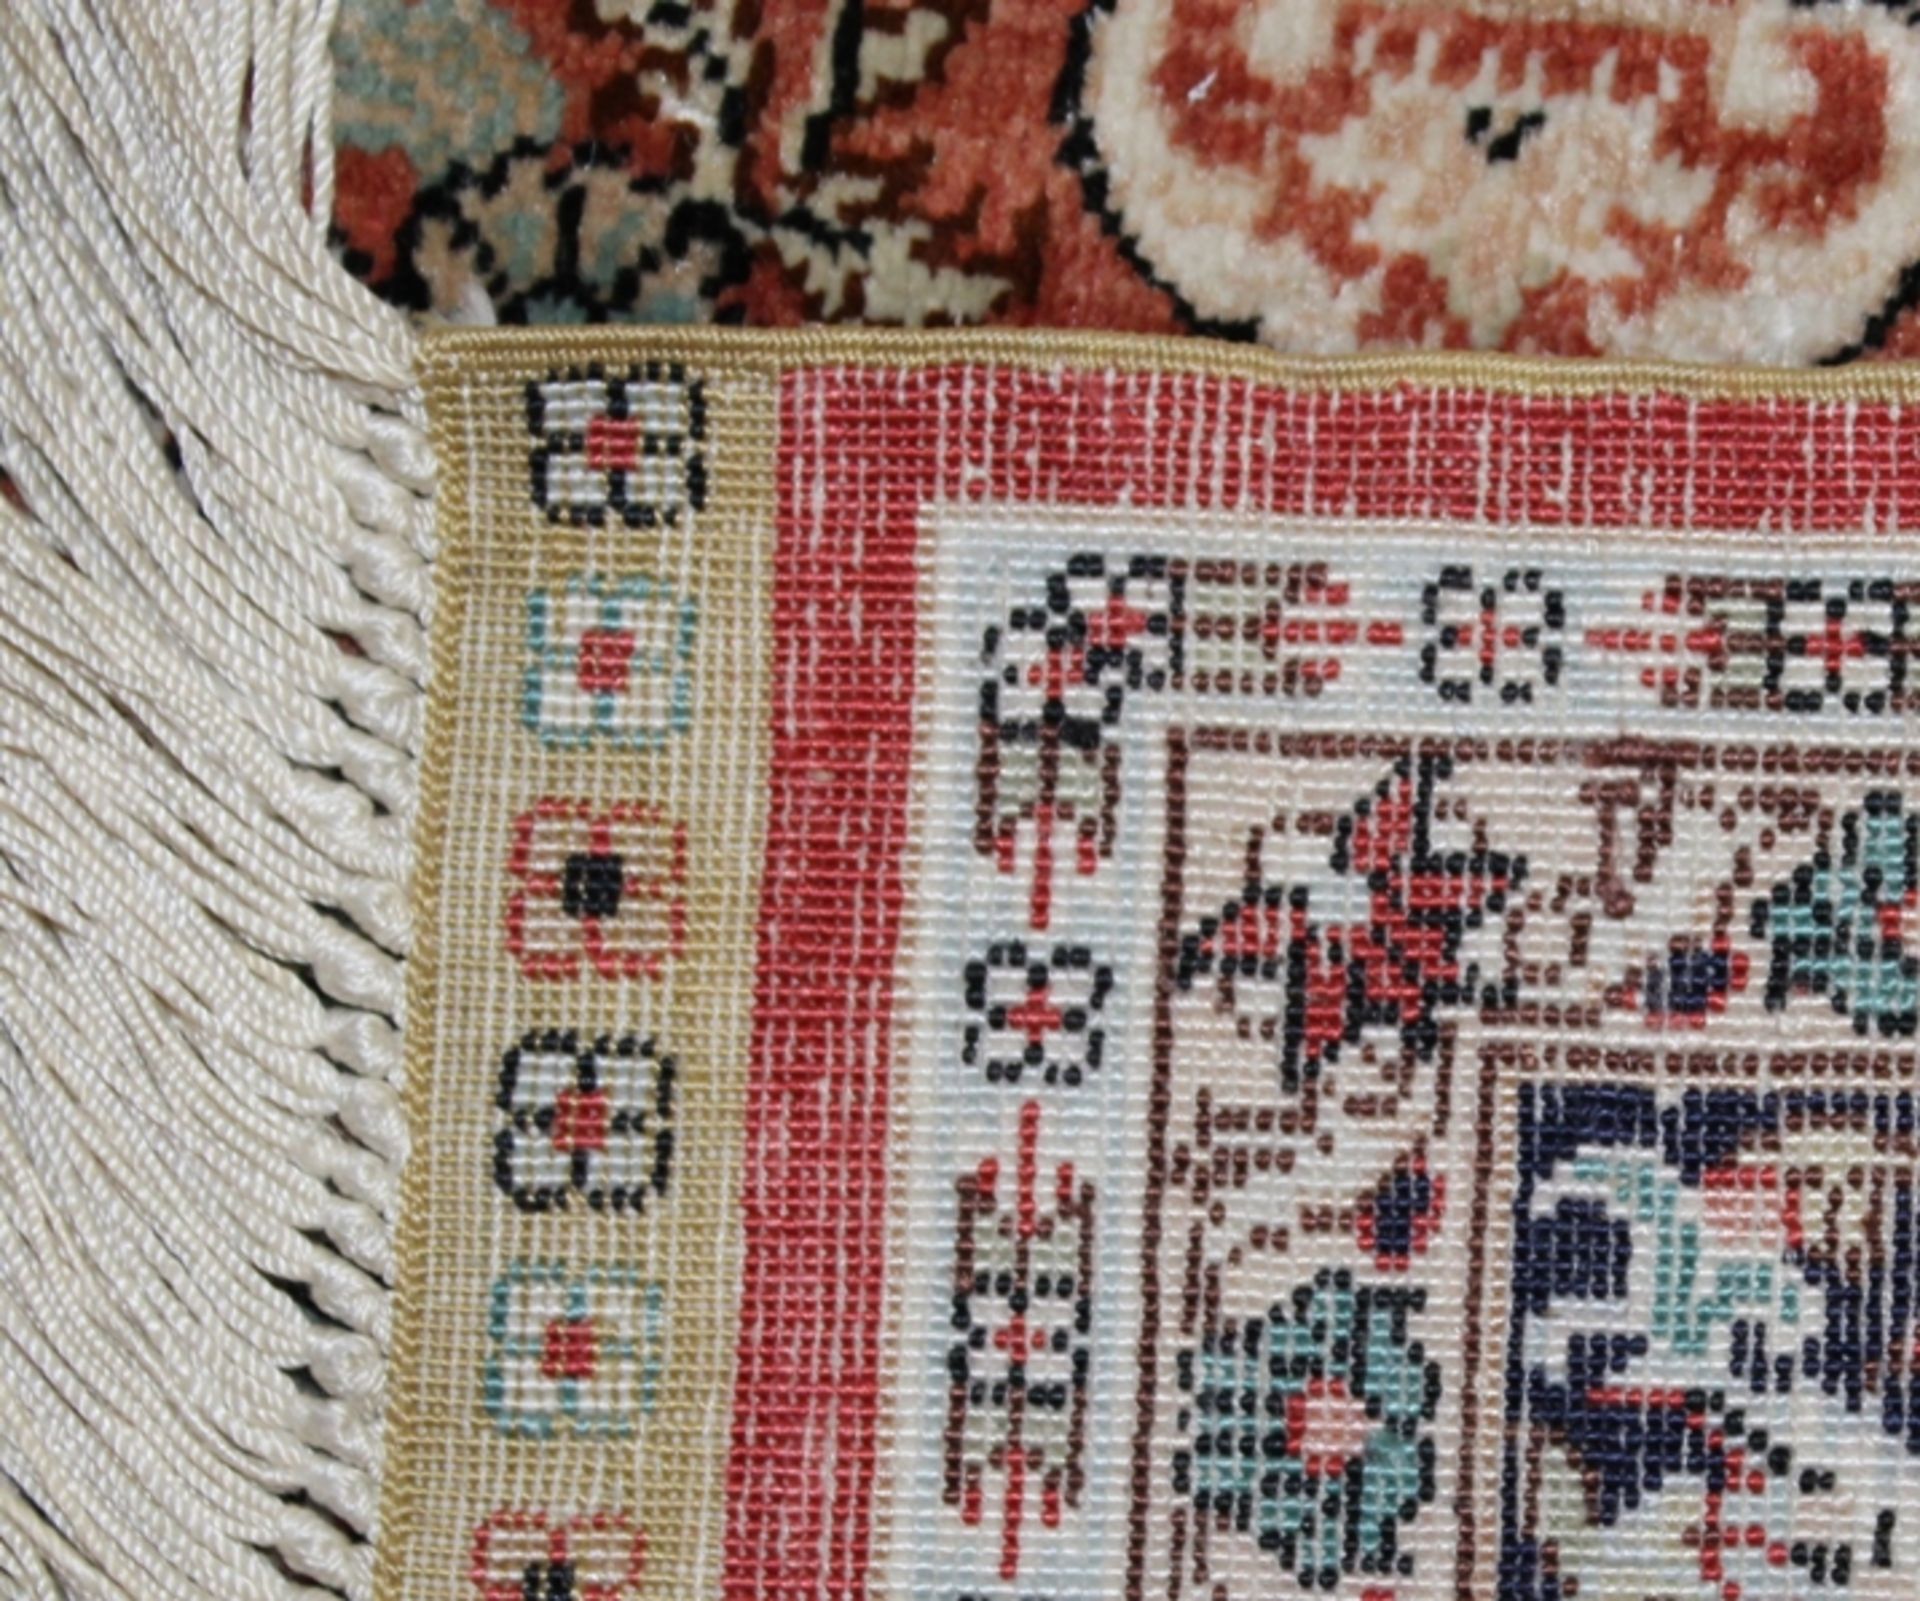 Orient-Seidenteppich, rotgrundig, guter Zustand, ca. 160 x 95cm. - Bild 3 aus 3